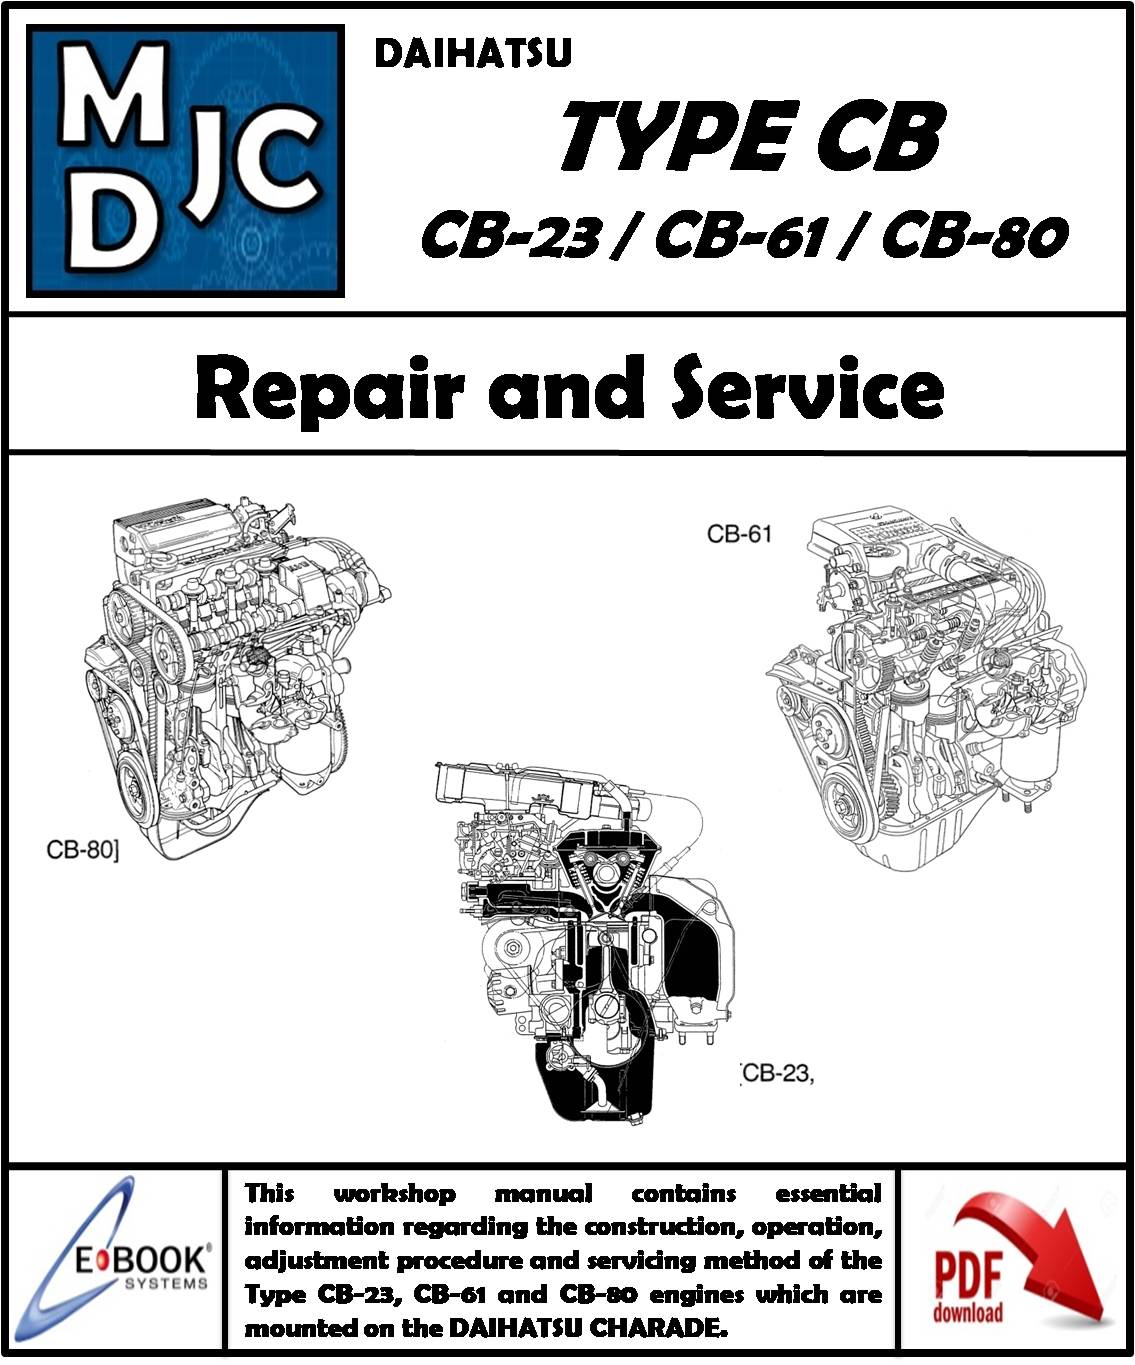 Manual de Taller (Reparación y Servicio) Daihatsu Motor 1.0 L Tipo CB ( CB-23 / CB-61 / CB-80)